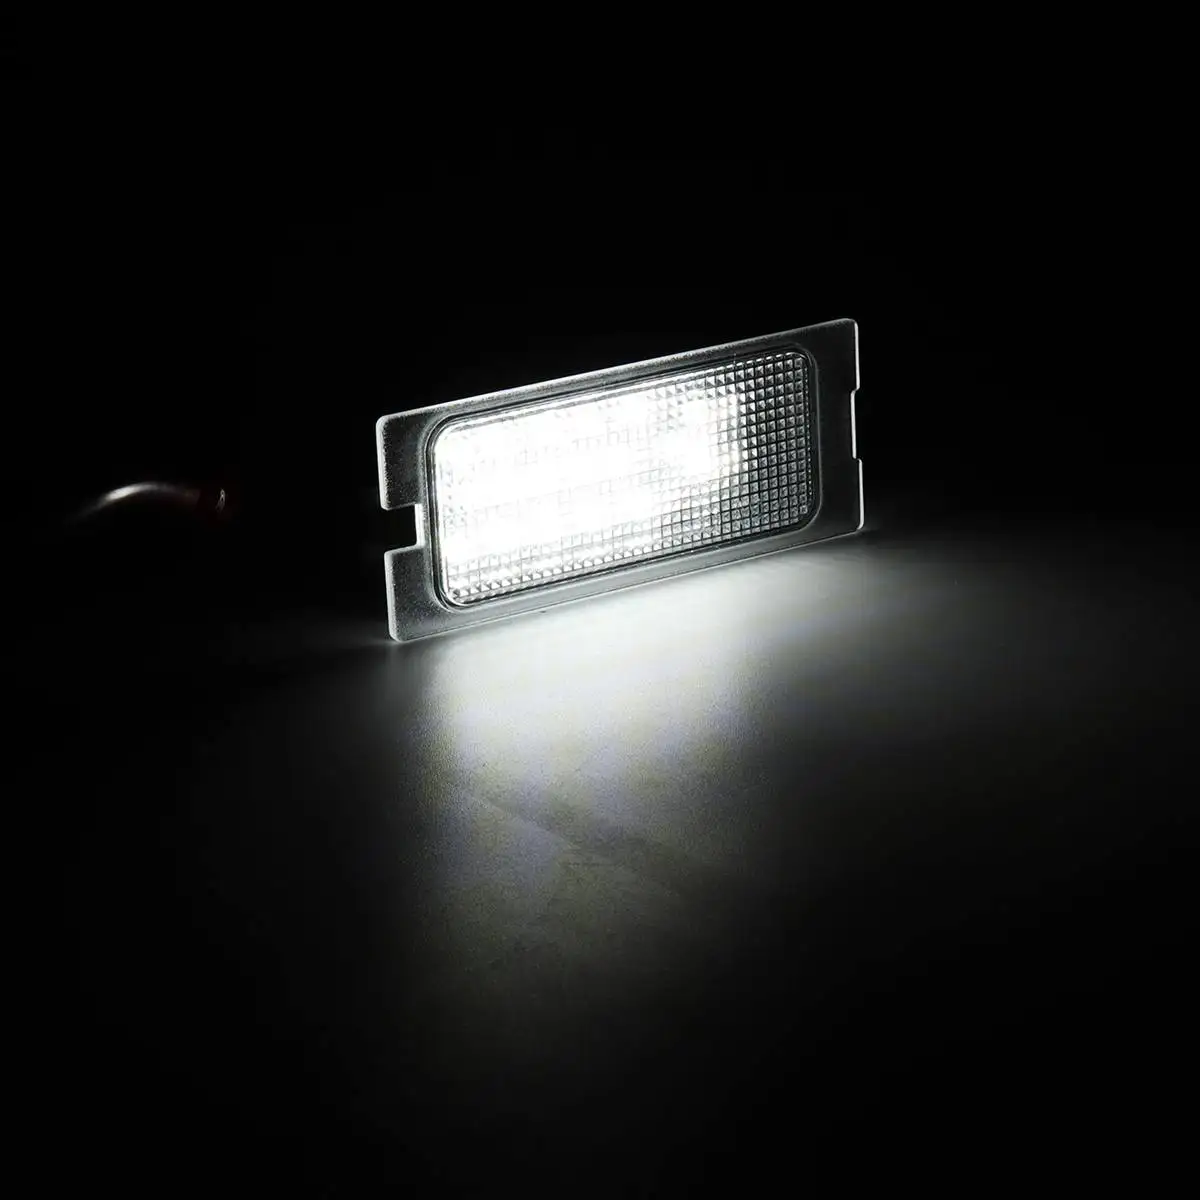 Пара светодиодный автомобильный номерной знак фонарь в сборе для Ford Edge для побега для Mercury Mariner 2007- авто свет номерного знака Лампа